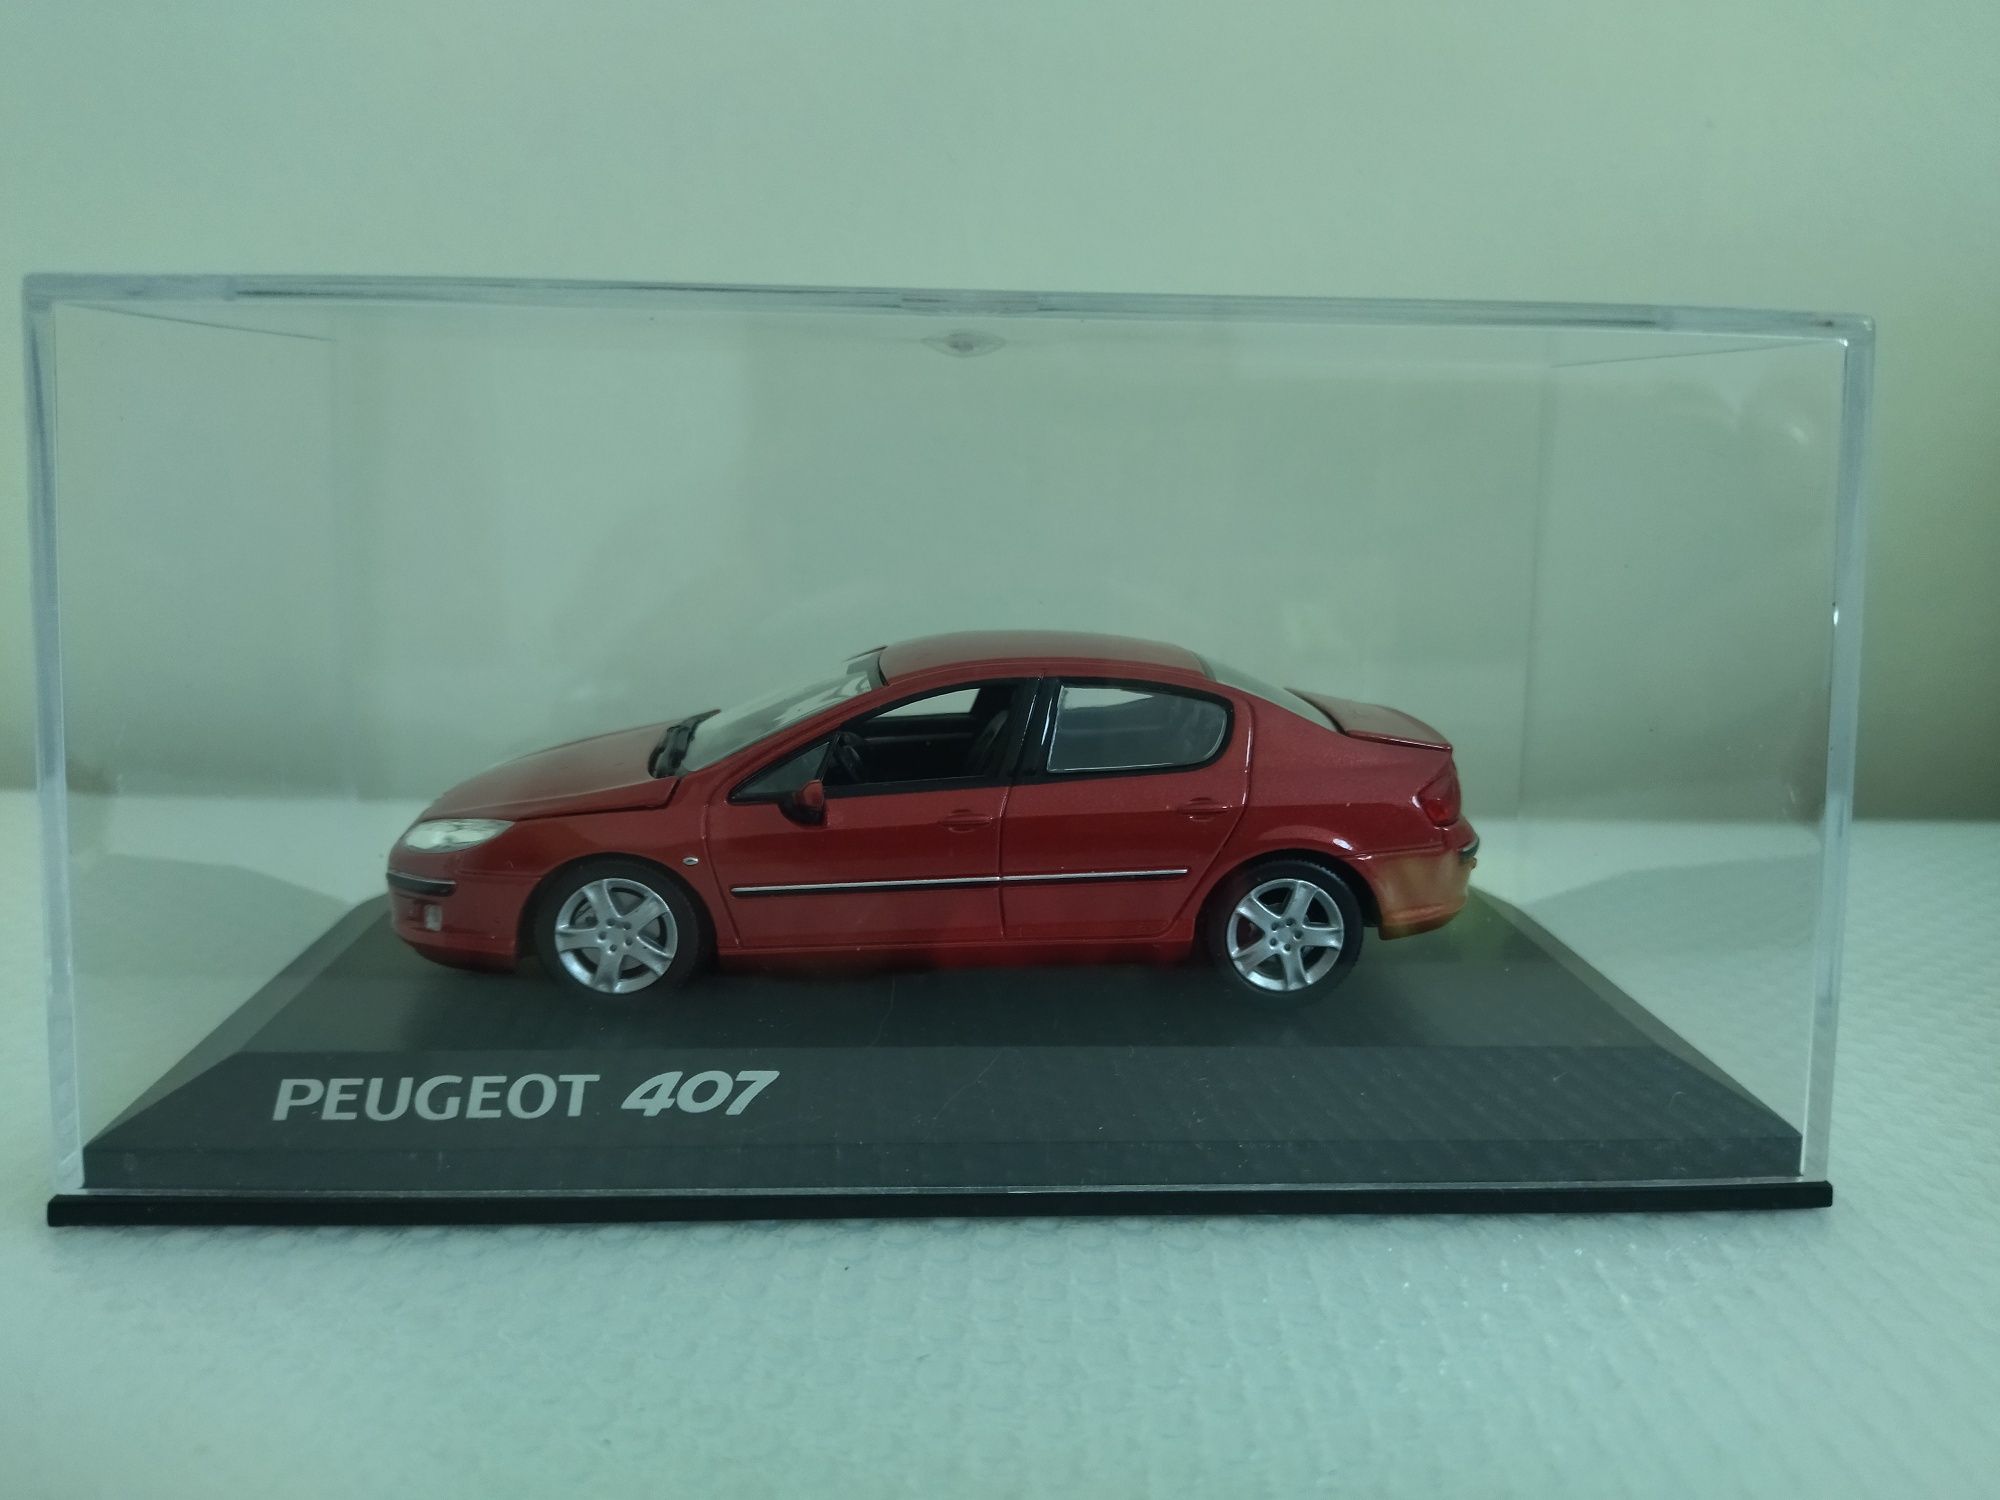 Miniatura Peugeot 407 Nova 1/43